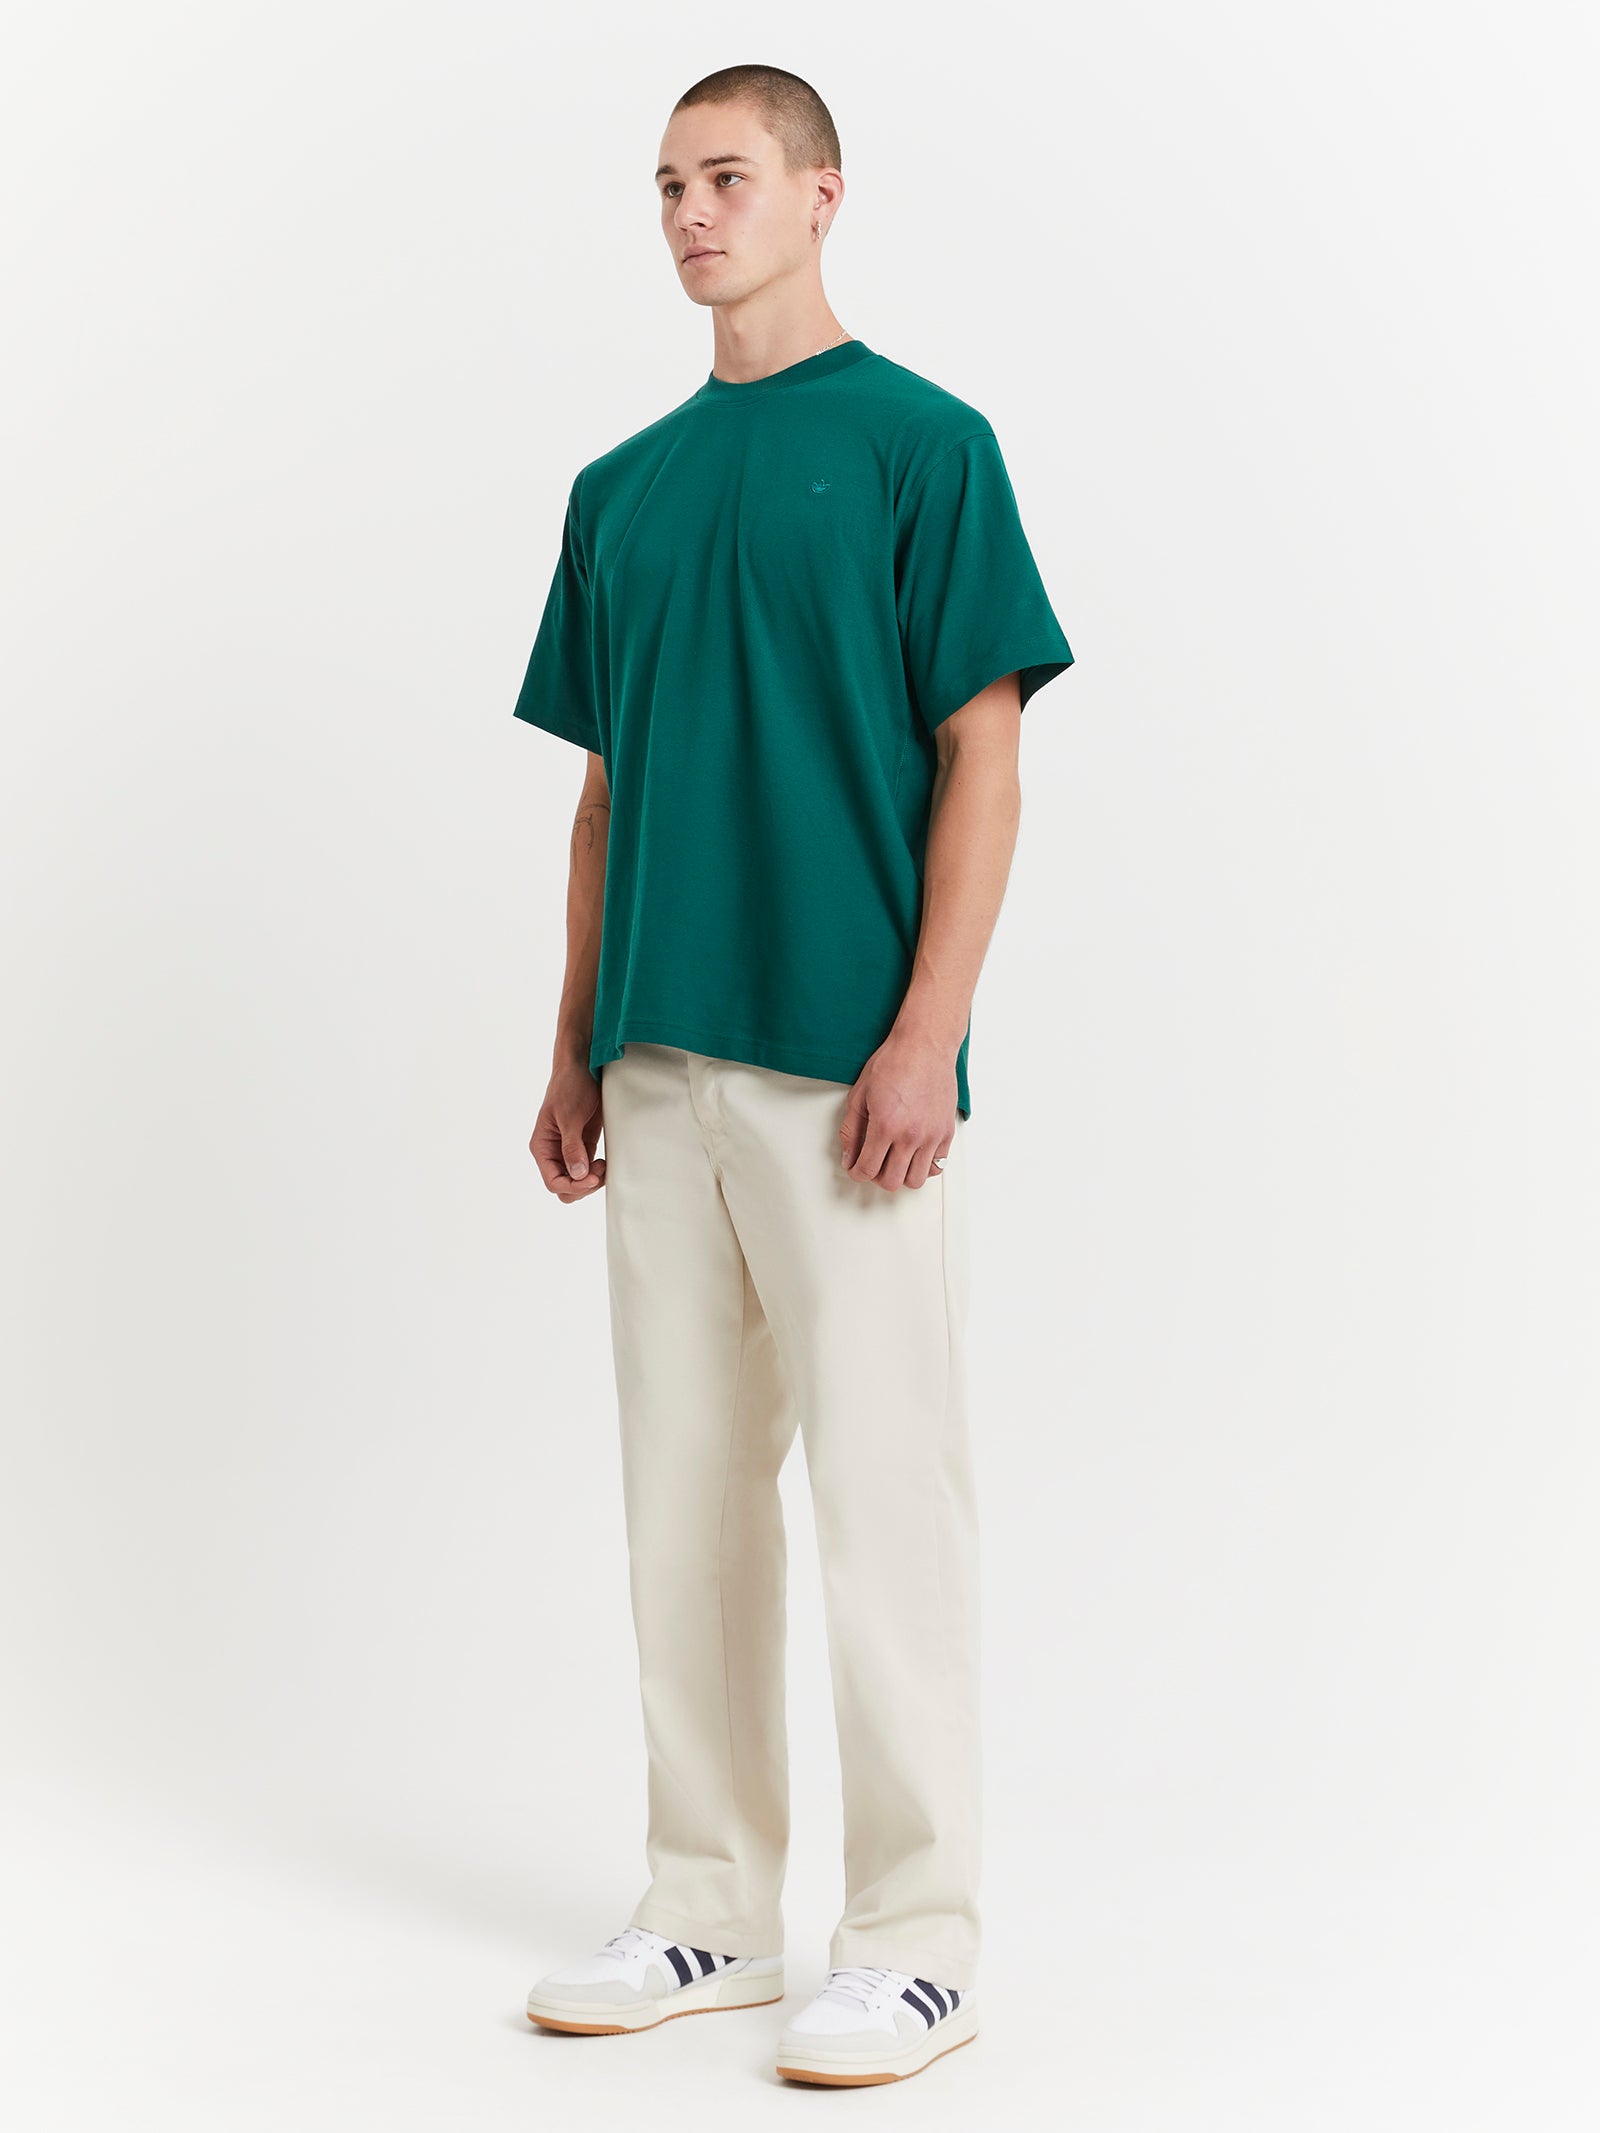 Adicolor Contempo T-Shirt in Collegiate Green - Glue Store